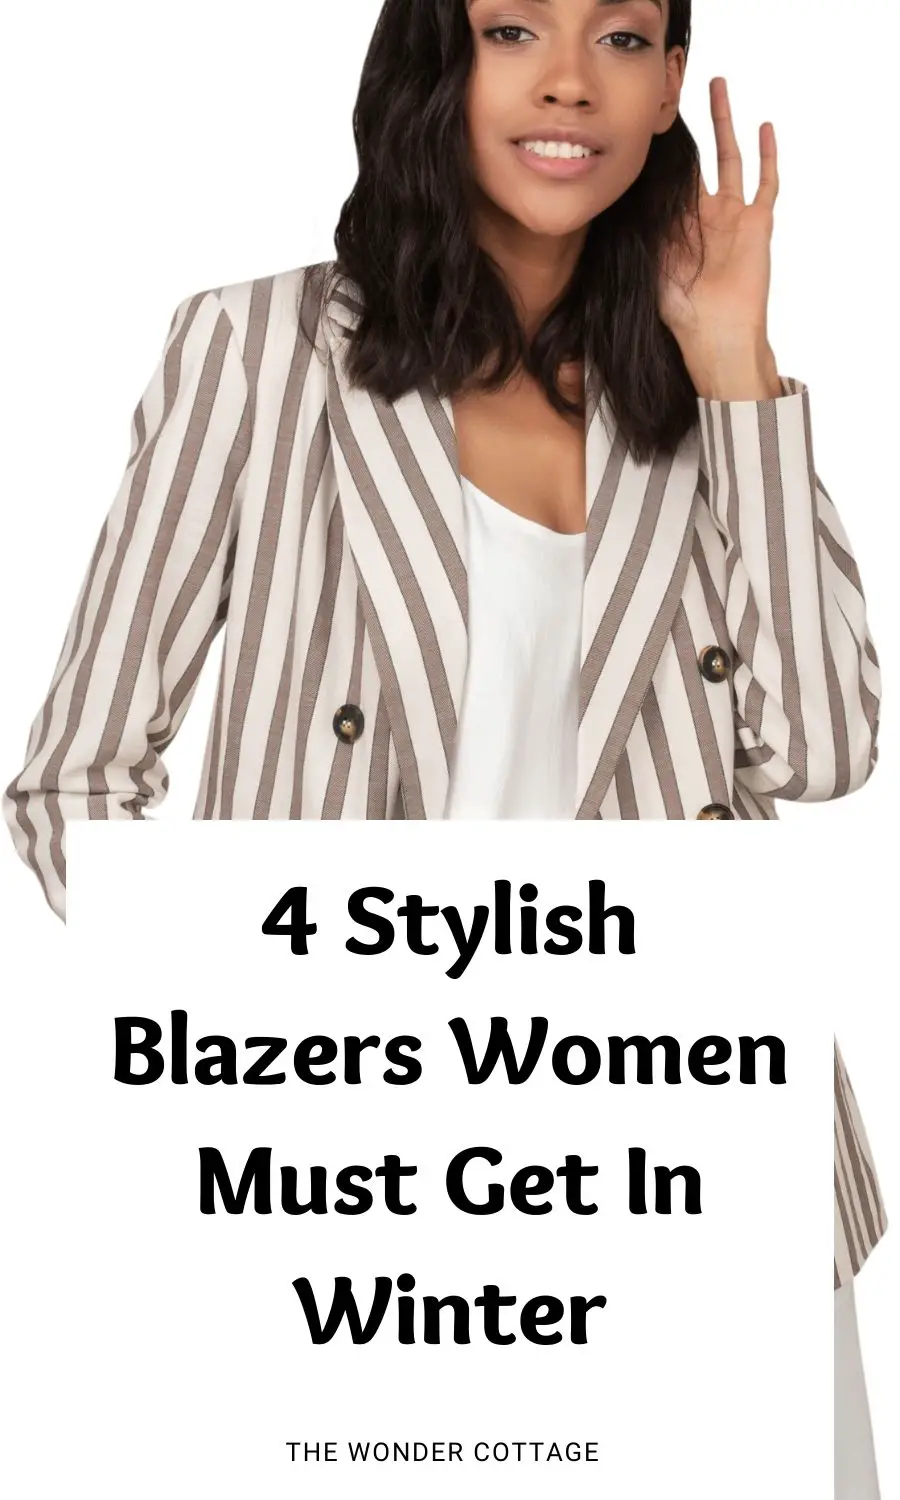 4 Stylish Blazers Women Must Get In Winter